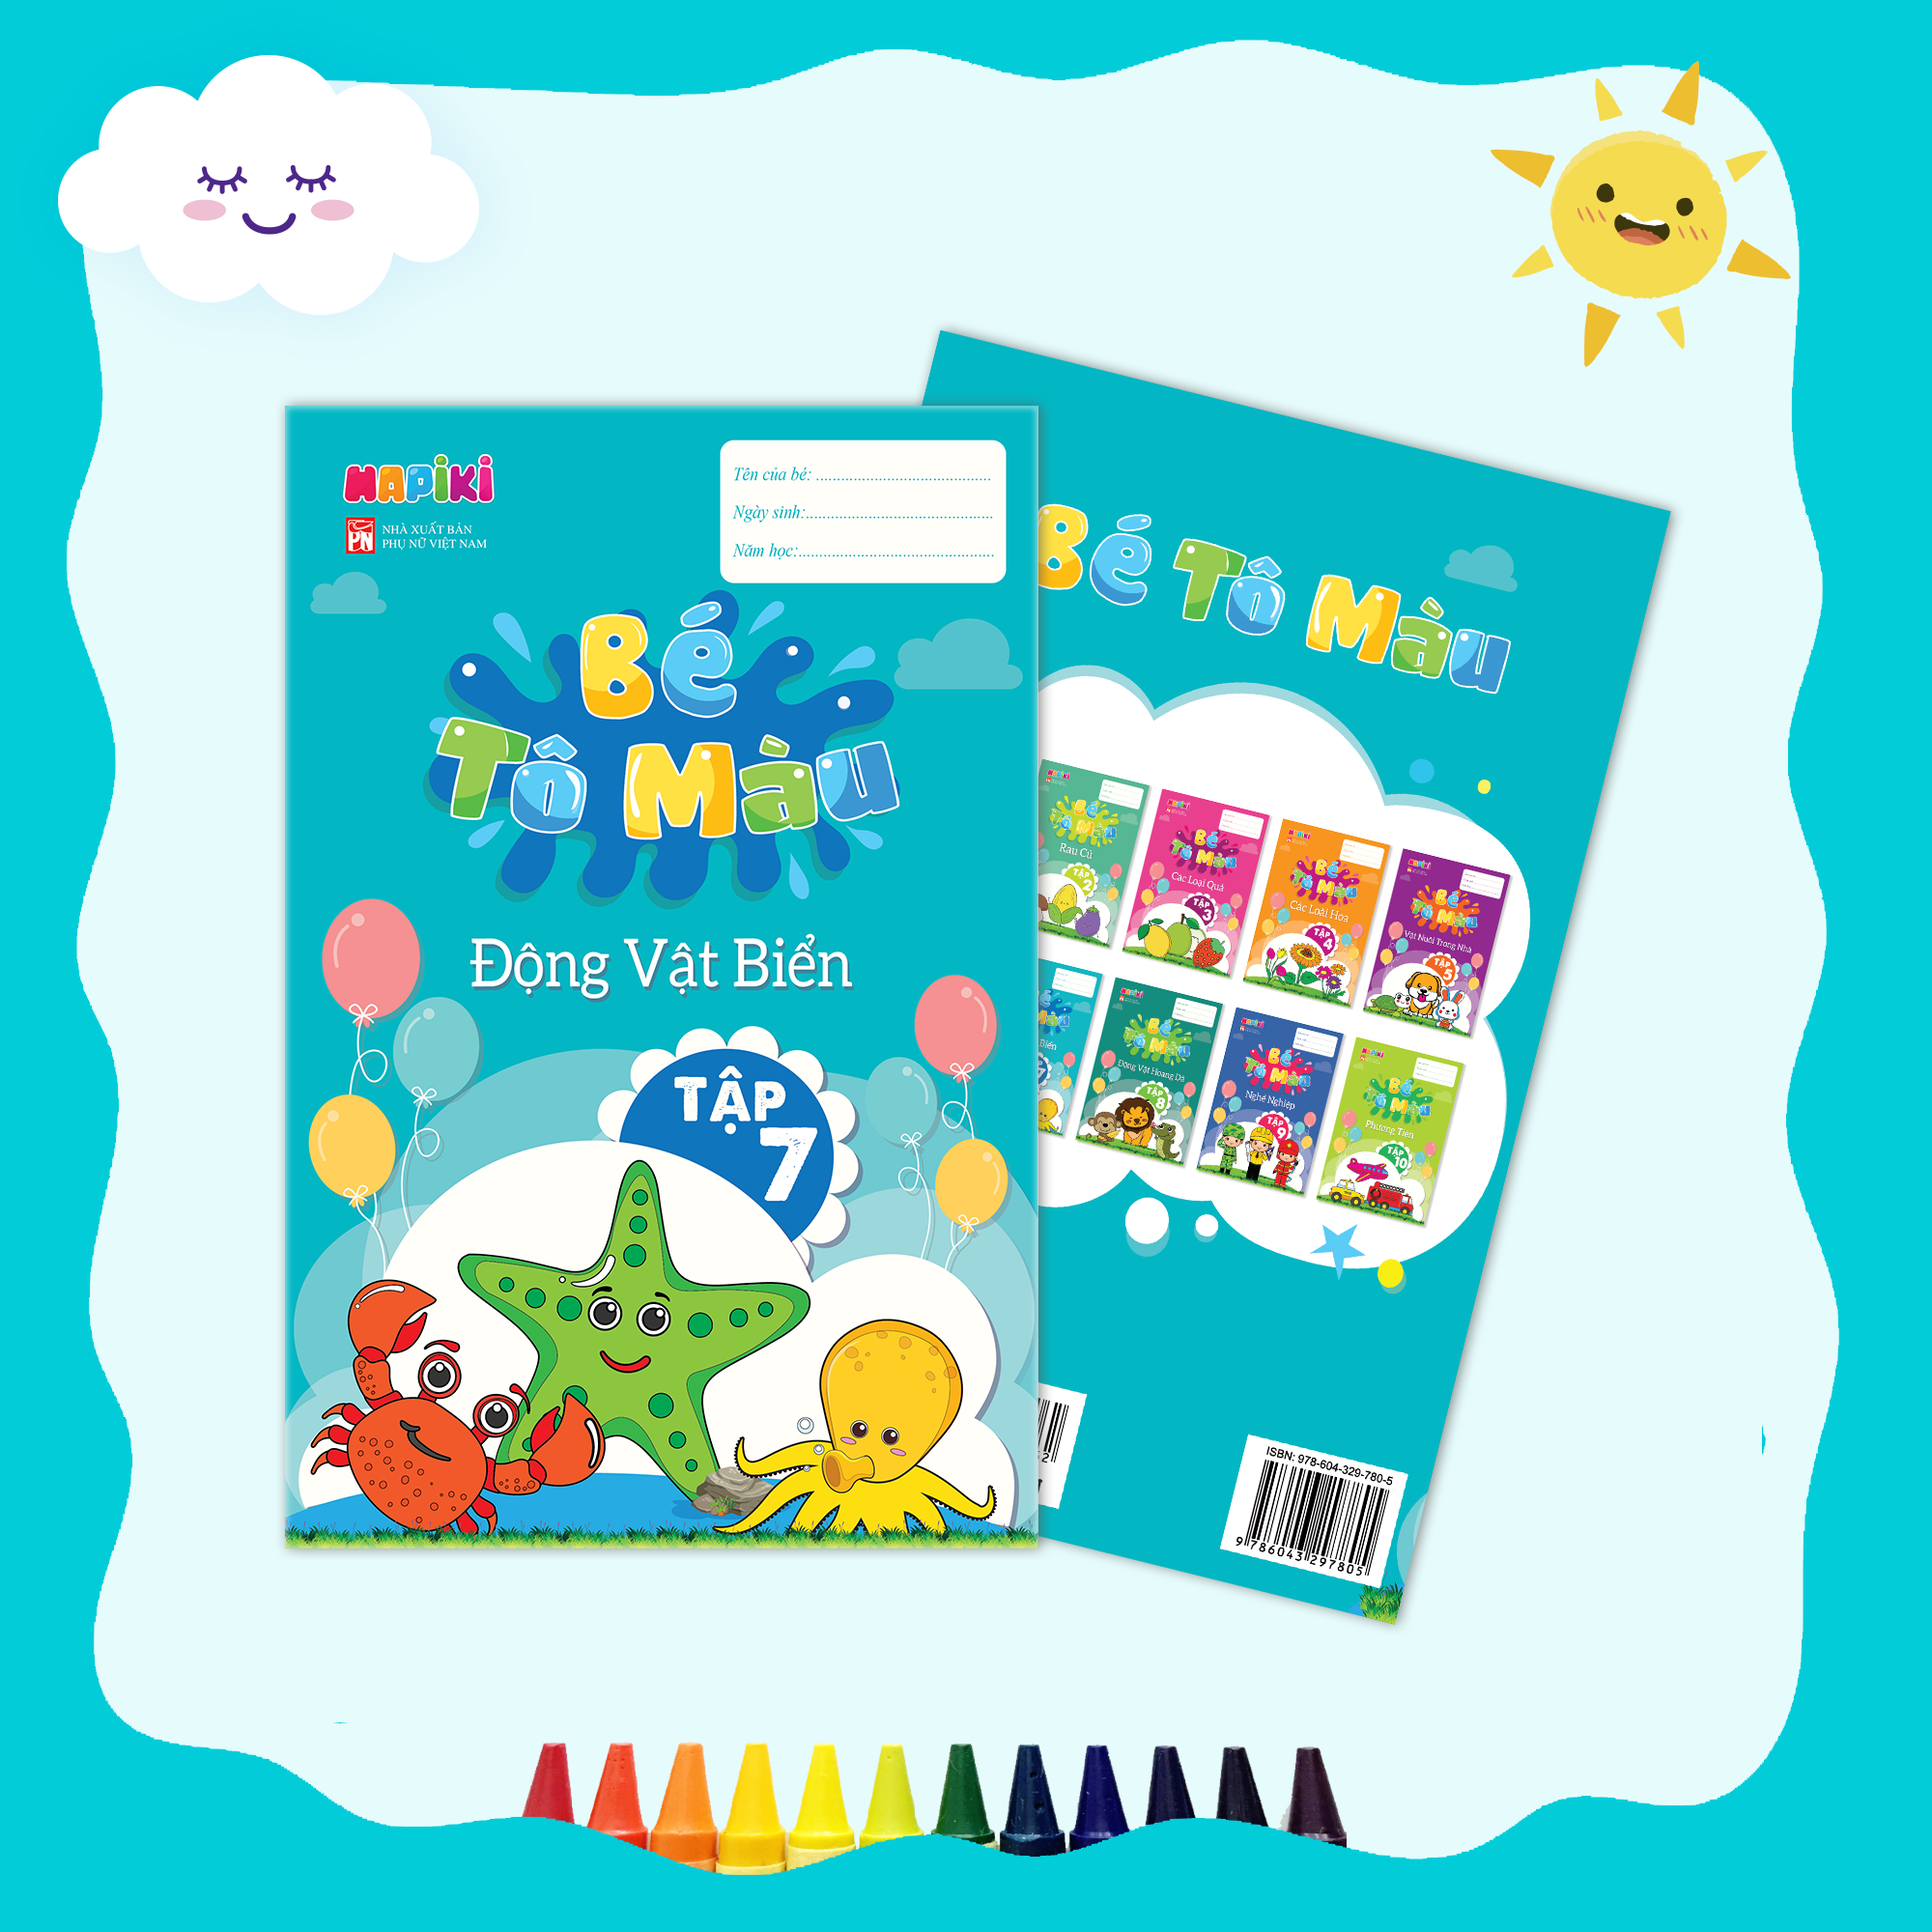 Sách tô màu chủ đề Động vật biển tập 7 - Cho cả bé trai, bé gái - 2 tuổi, 3 tuổi, 4 tuổi - Hapiki book